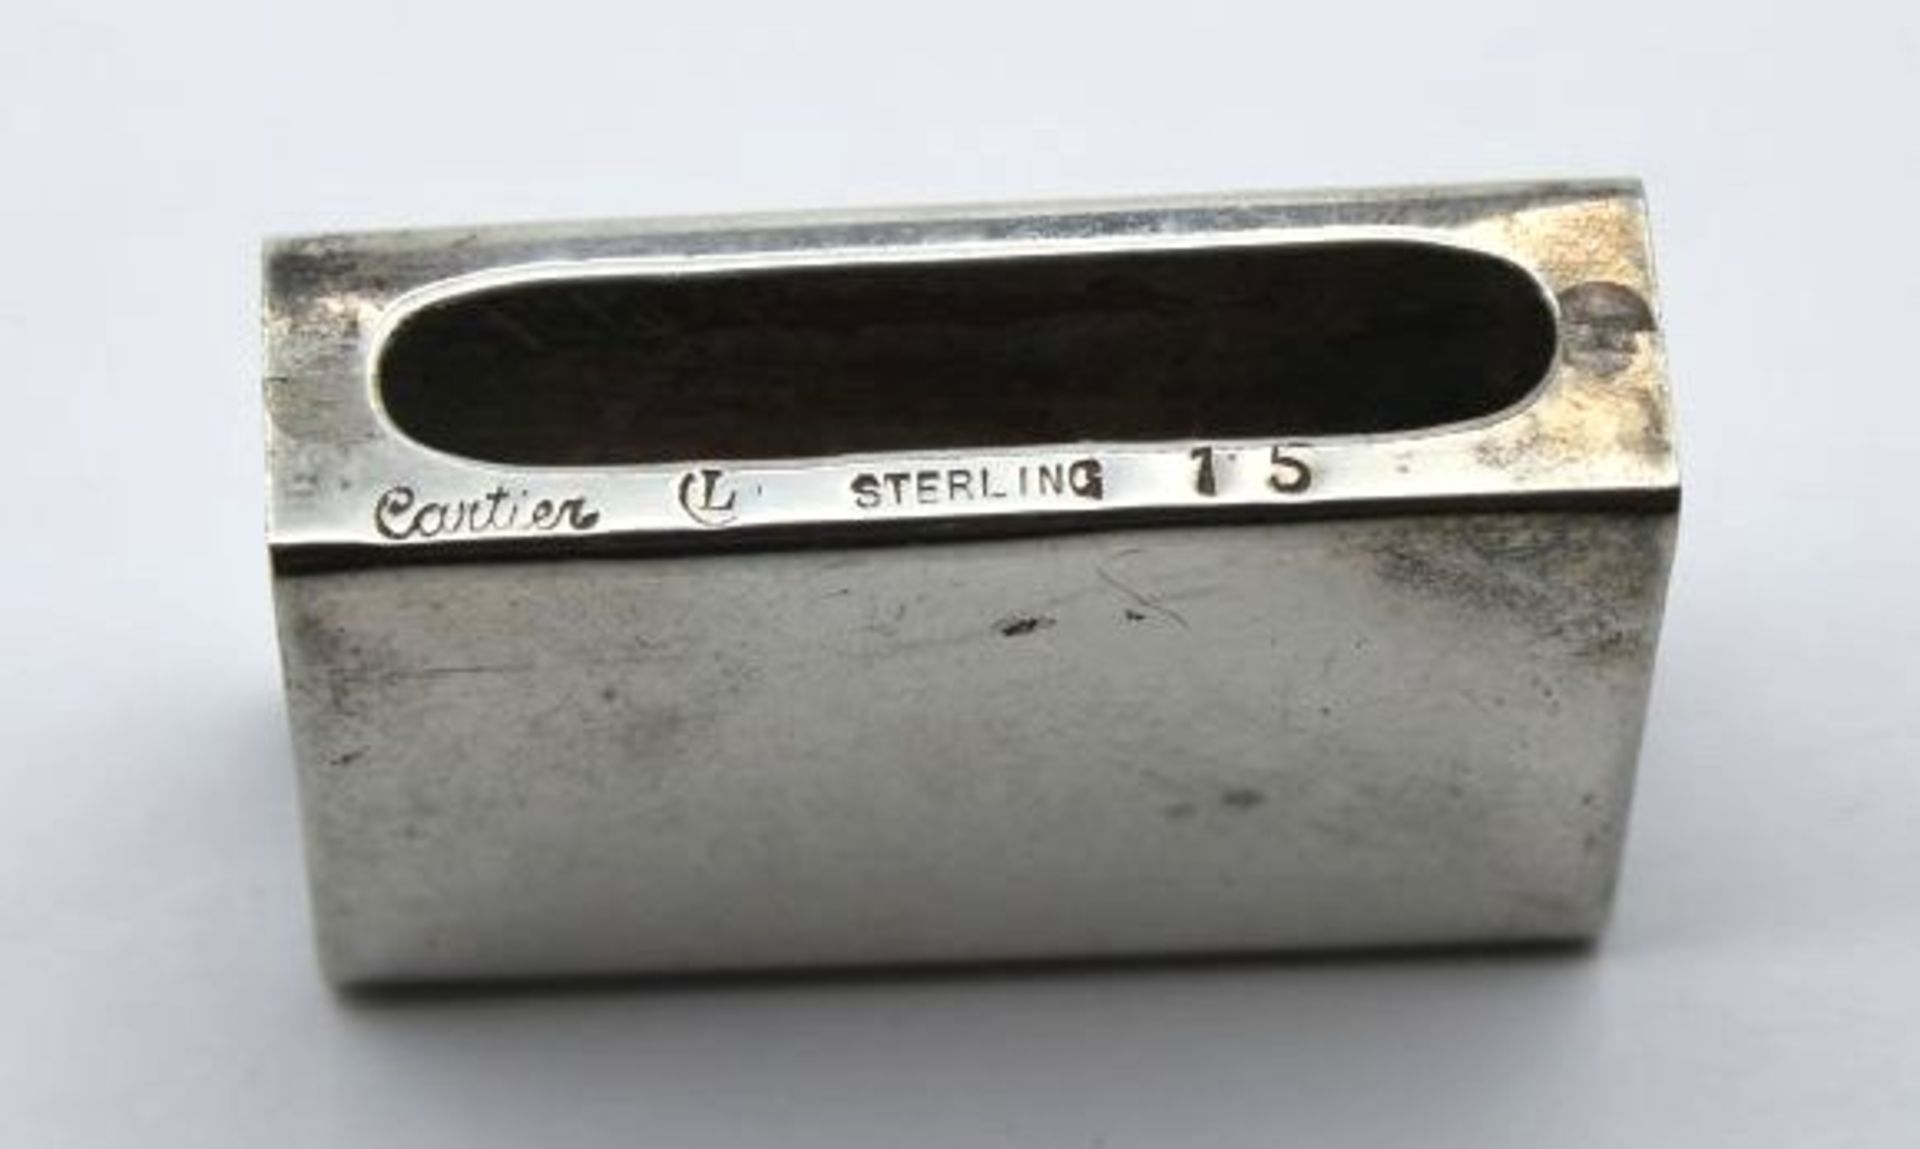 Streichholzschachtel-Halter, Sterling, gemarkt "Cartier", Ziermonogramm, 14,4gr., 4,5 x 3 x 1,2cm. - Image 3 of 3